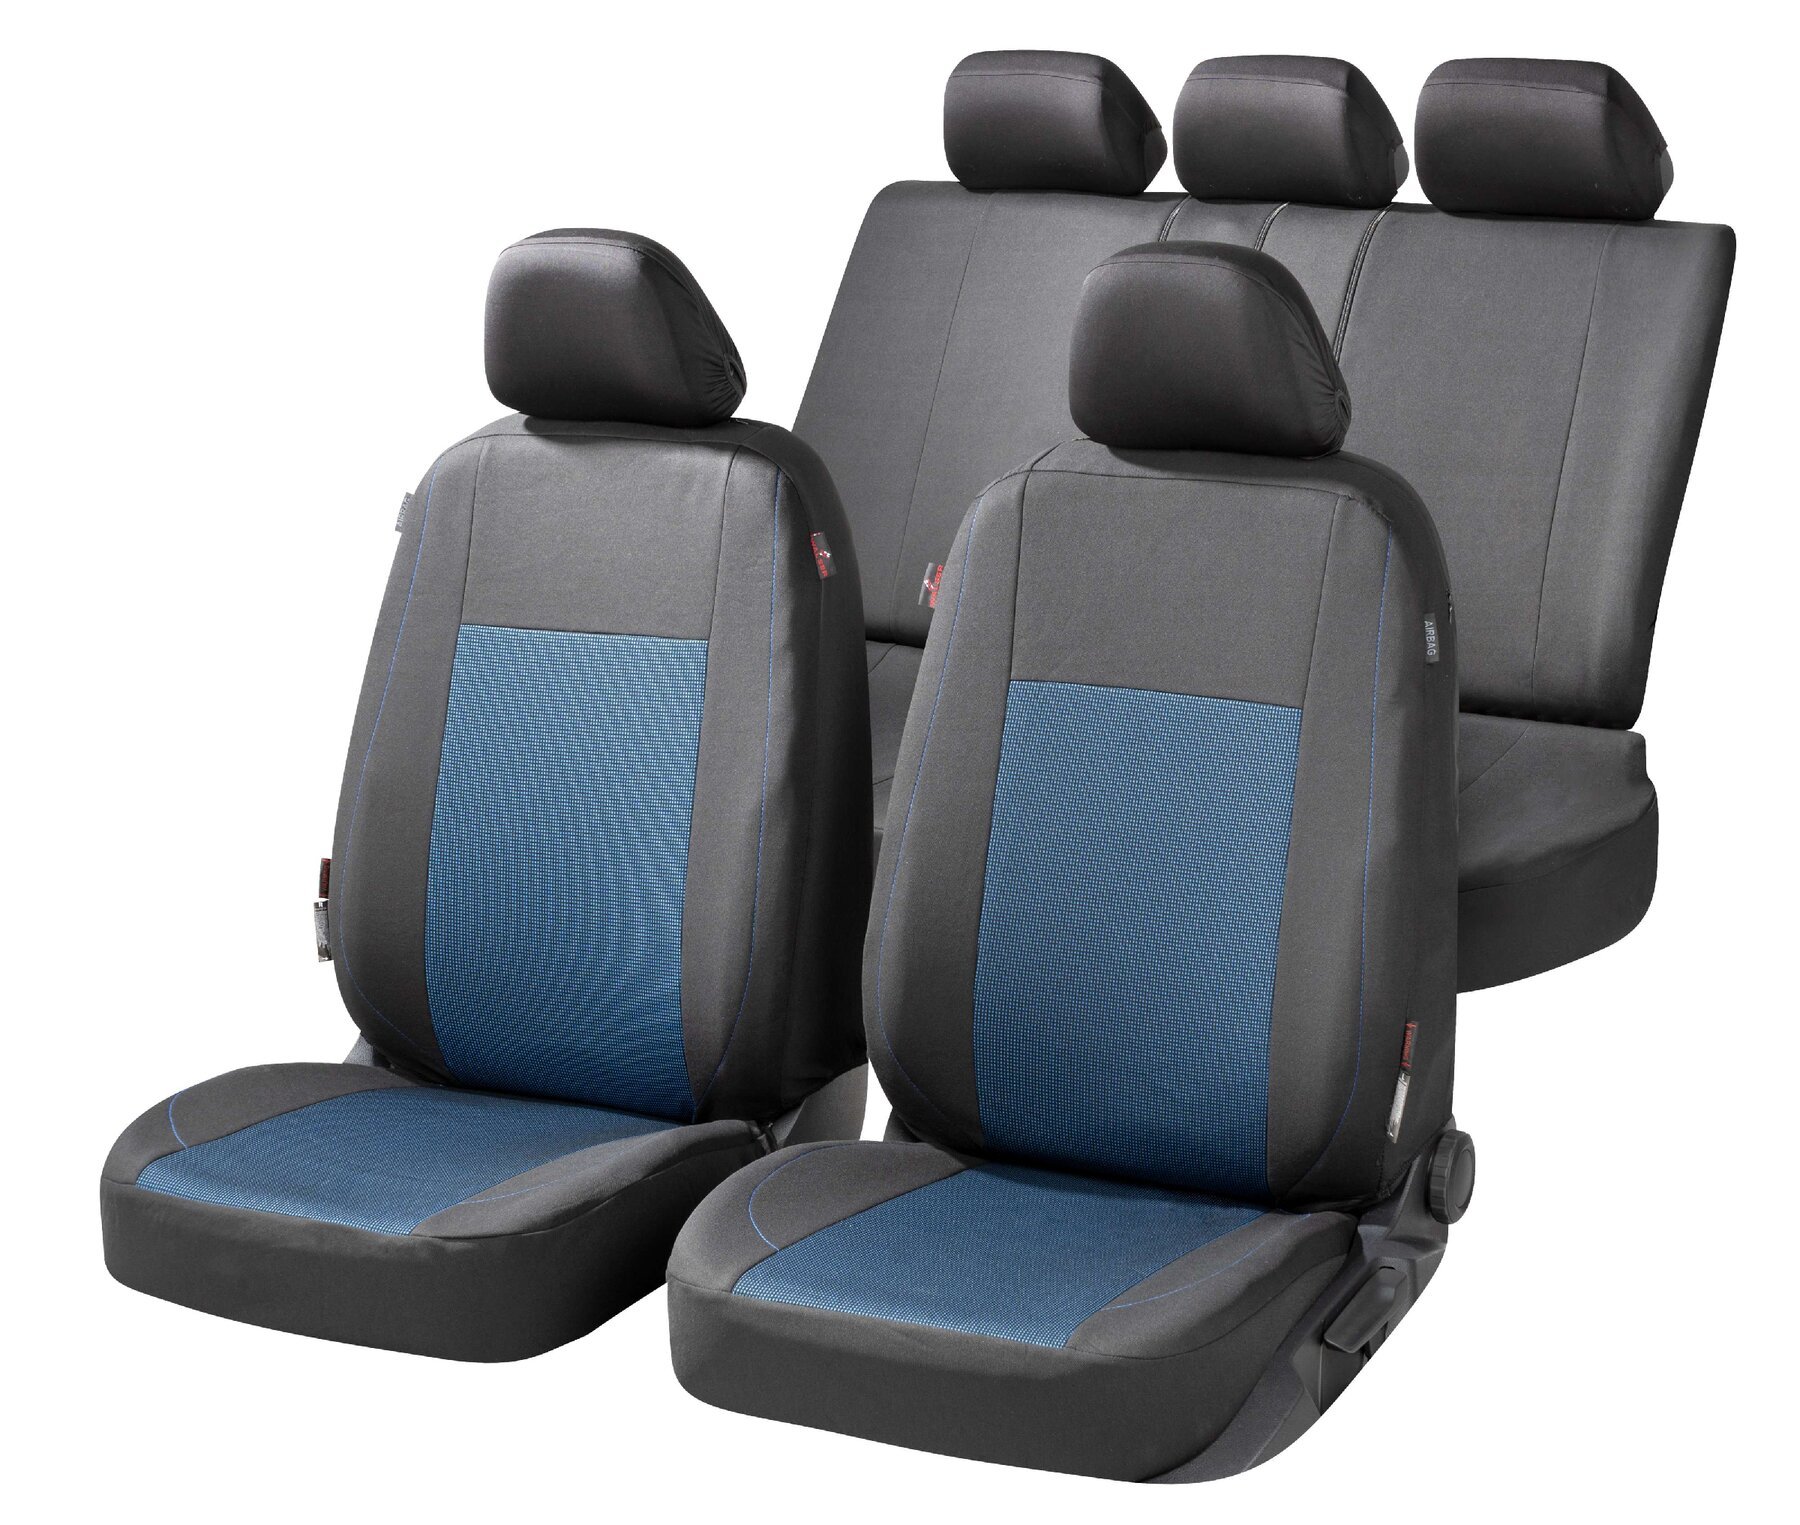 Premium Autostoelbekleding Ardwell met Zipper ZIPP-IT, Autostoelhoes set, 2 stoelbeschermer voor voorstoel, 1 stoelbeschermer voor achterbank zwart/blauw